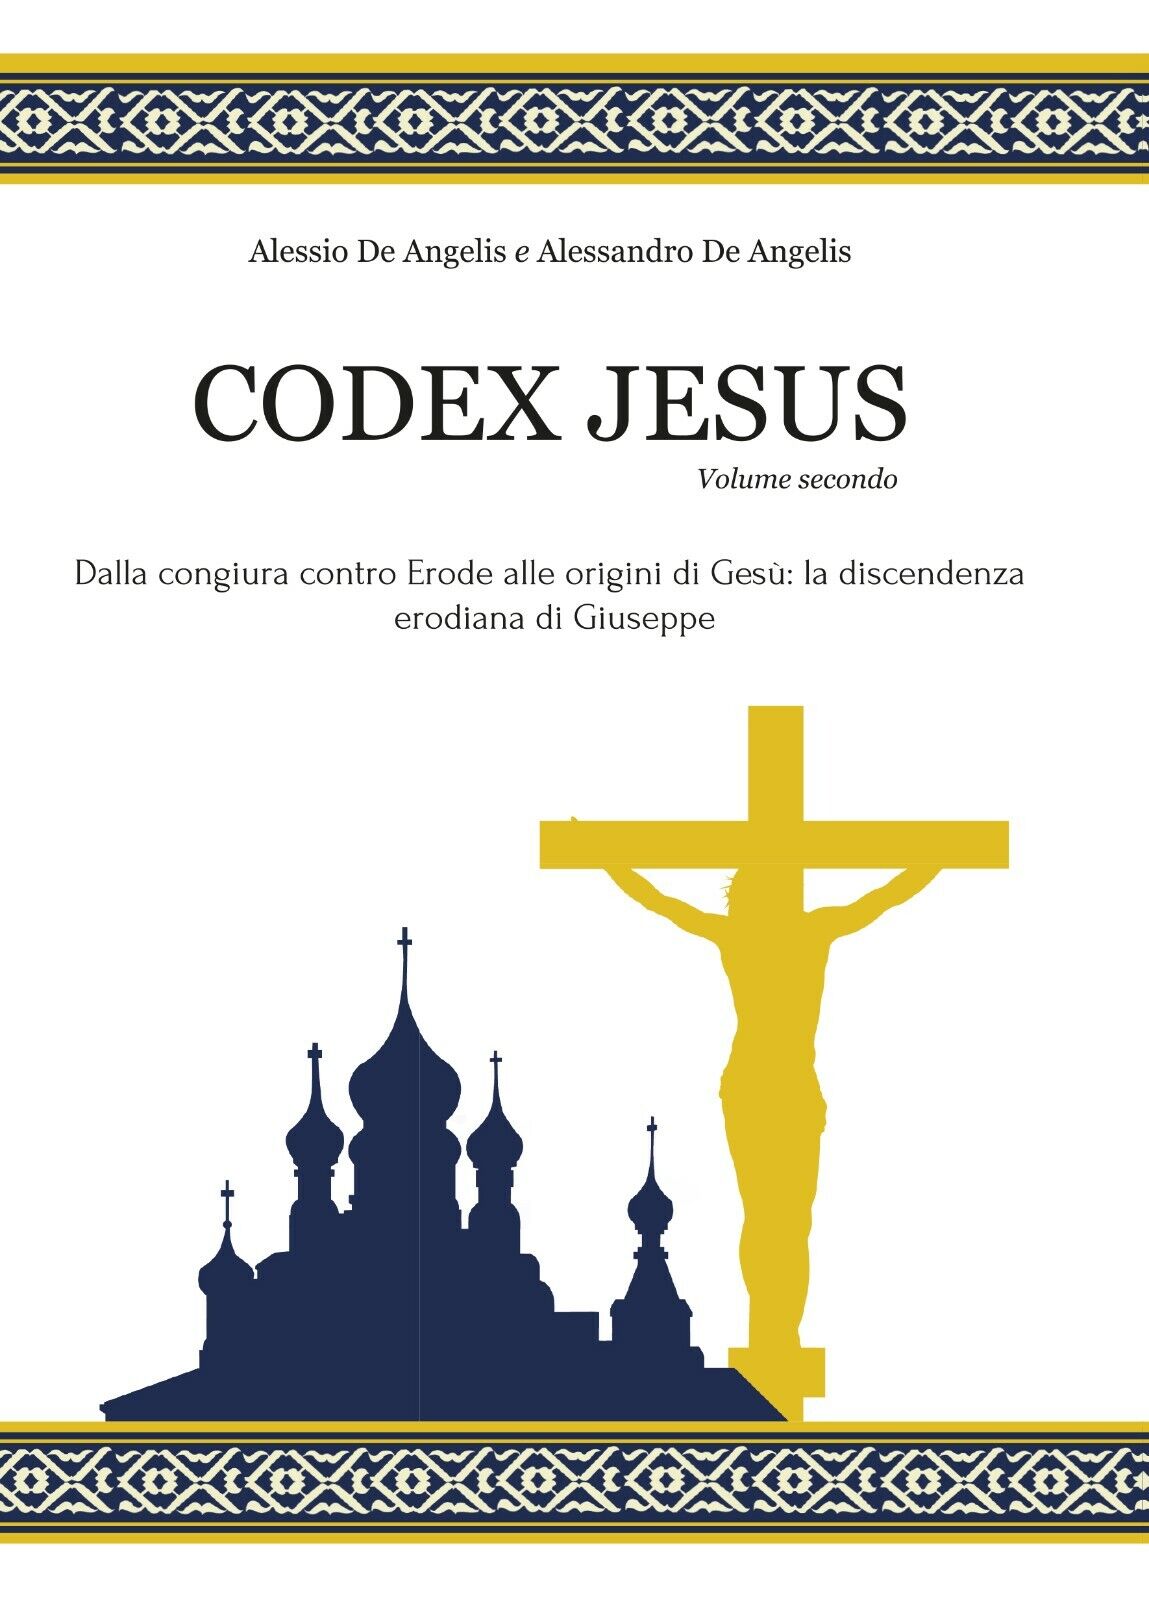 Codex Jesus II - Alessio De Angelis, Alessandro De Angelis - P